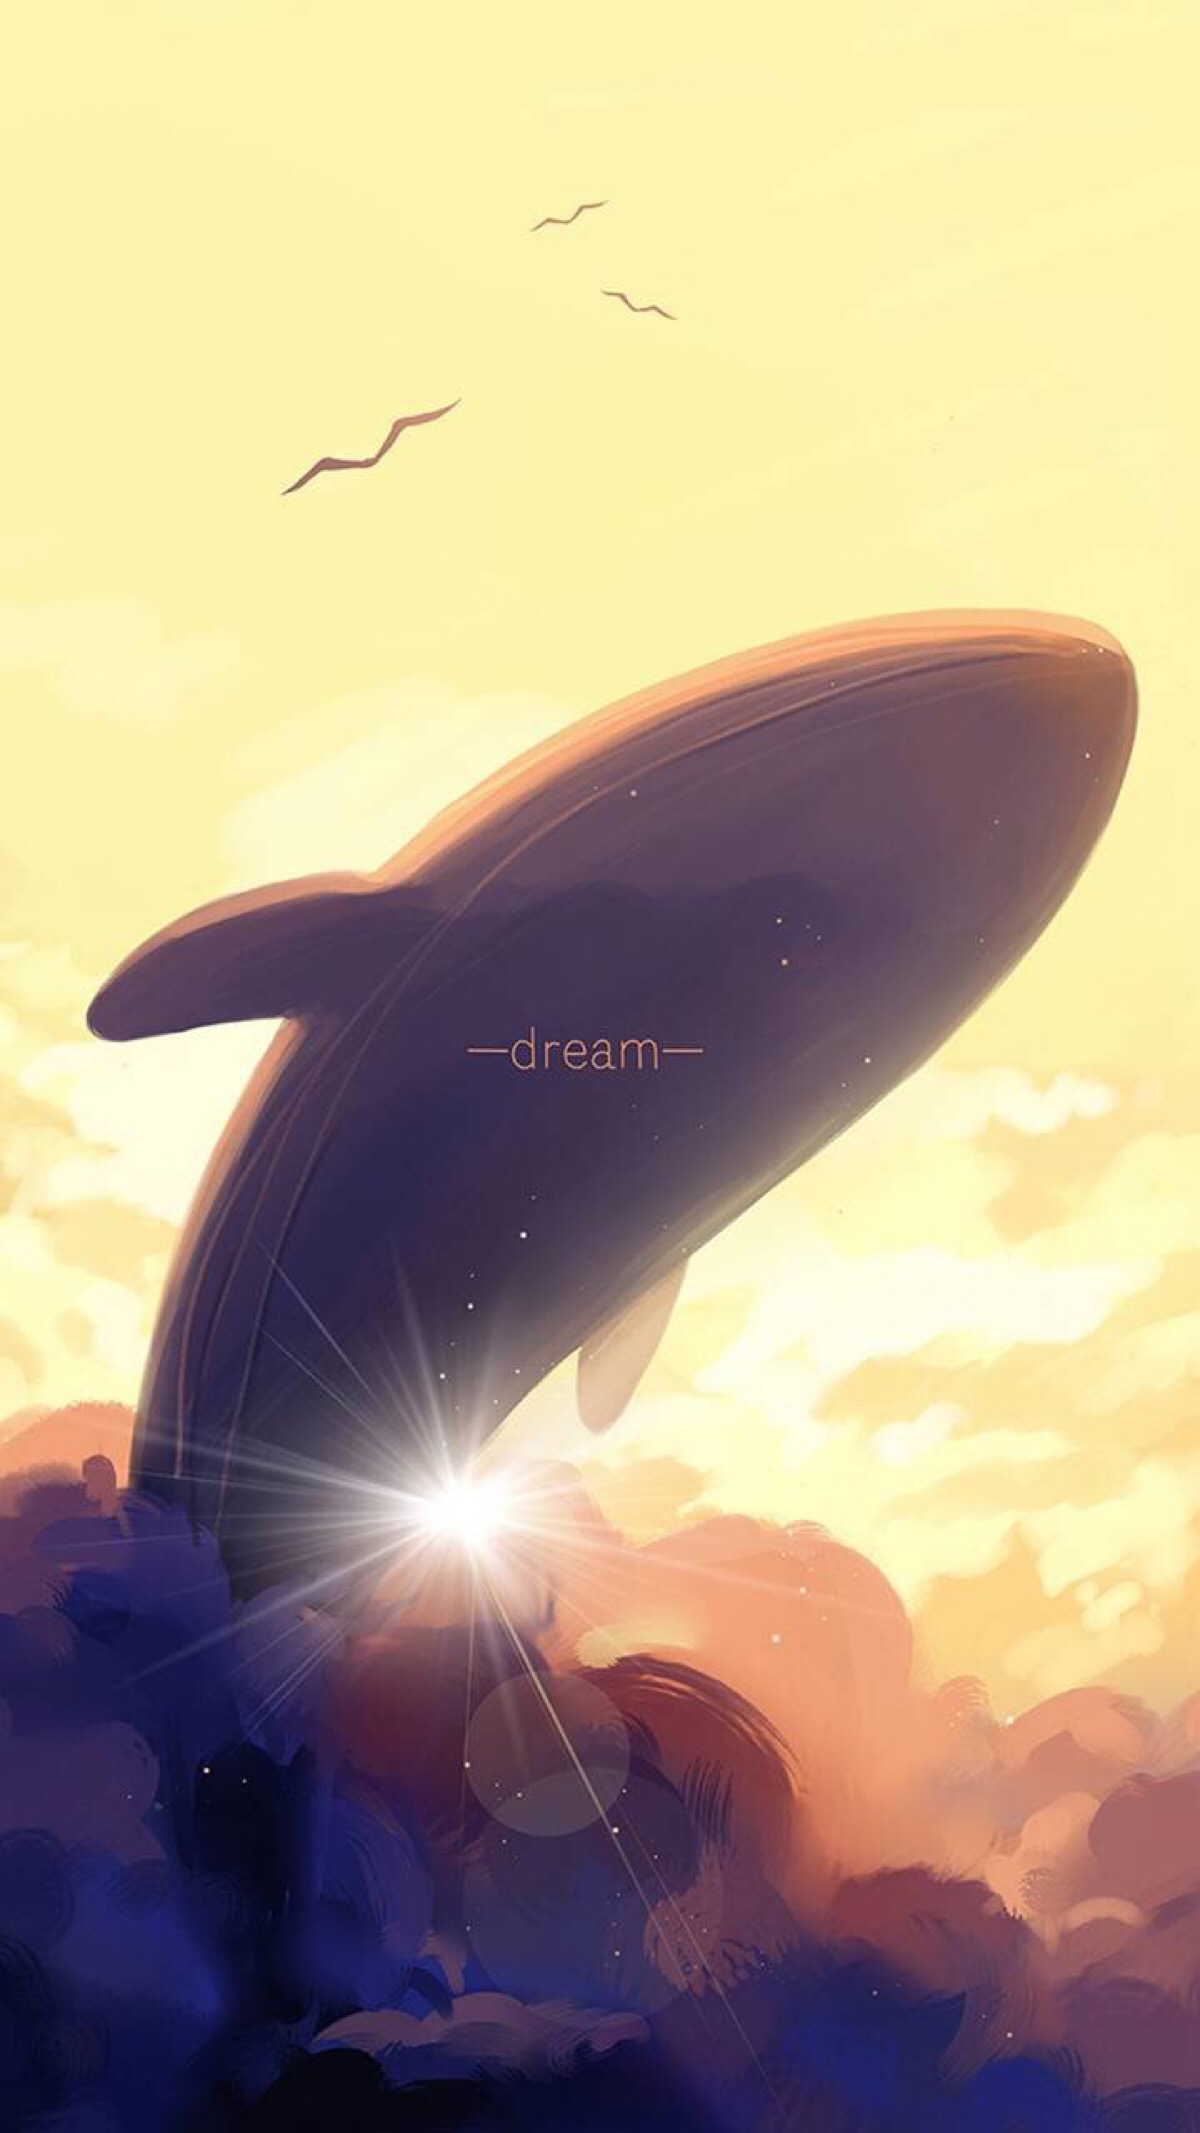 夕阳中的鲸鱼,吧啦啦啦